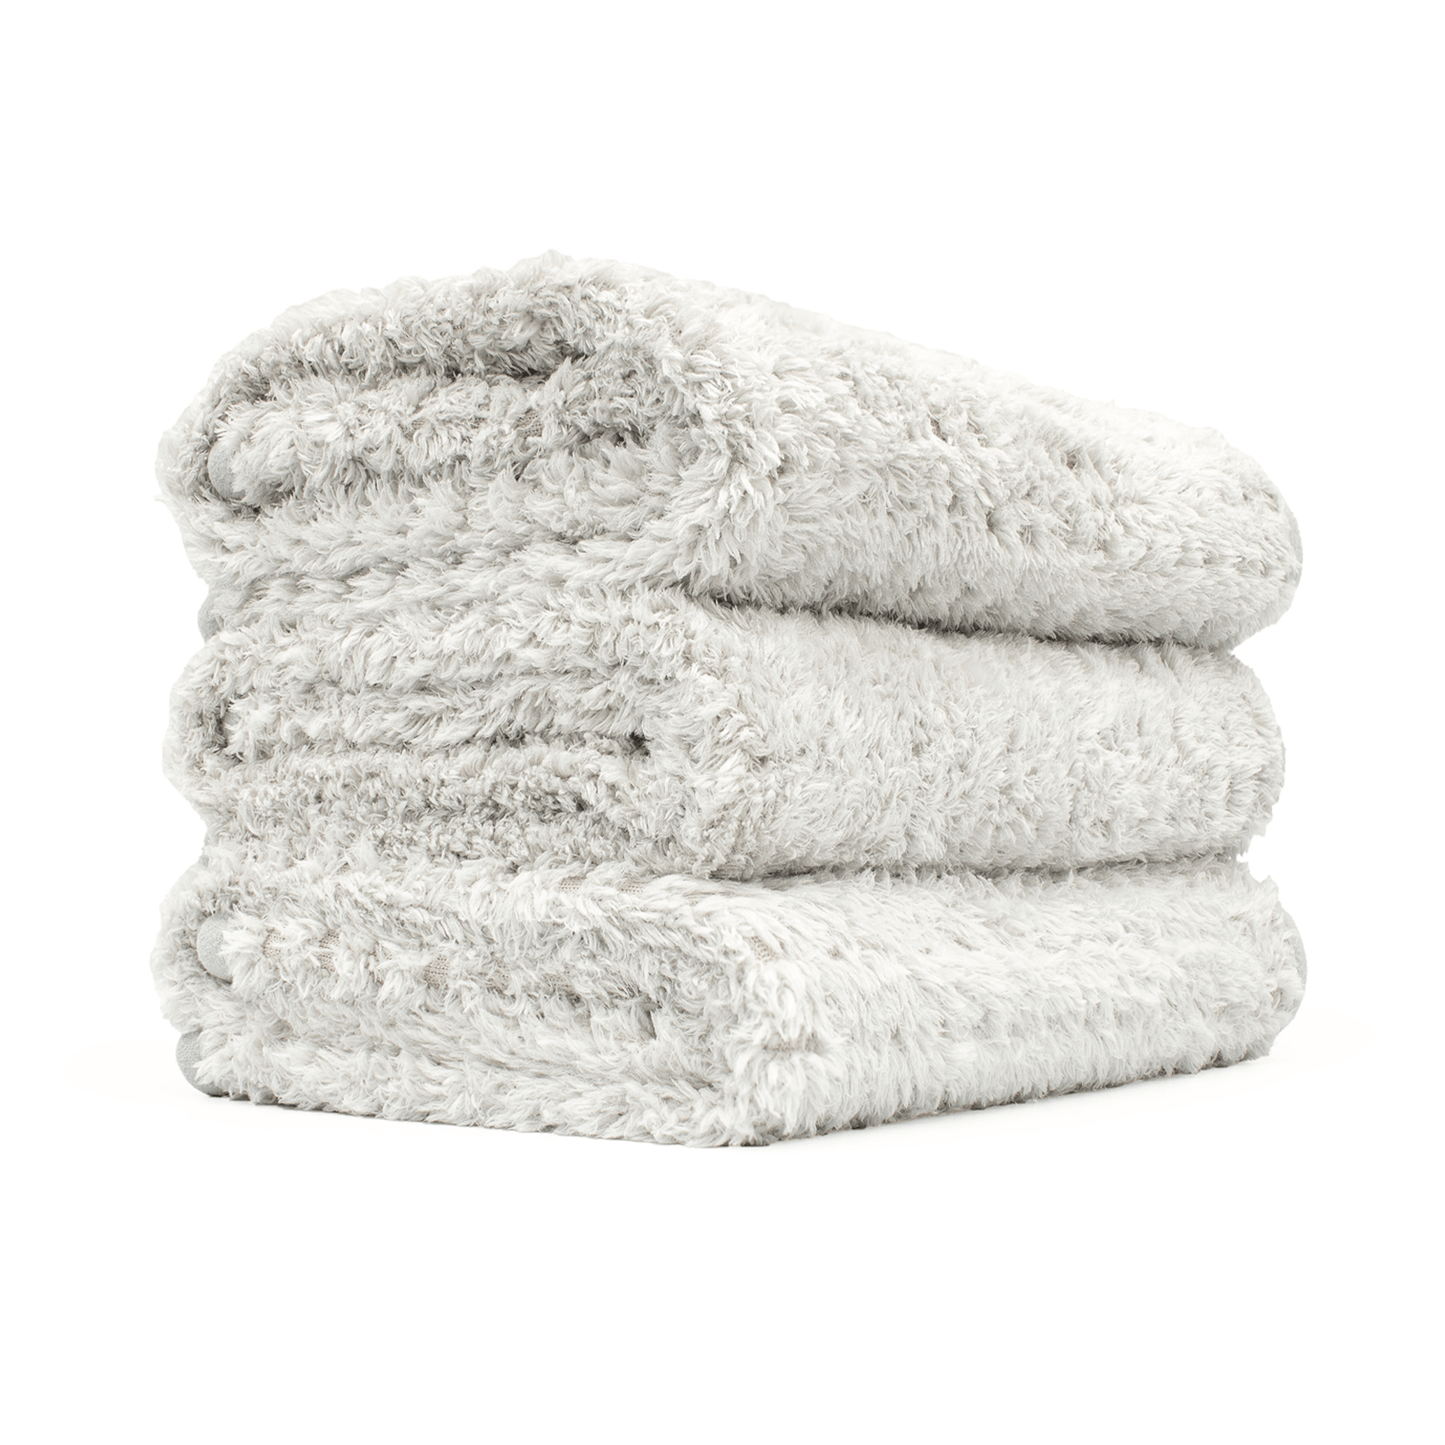 Platinum Pluffle Premium Detailing Towel